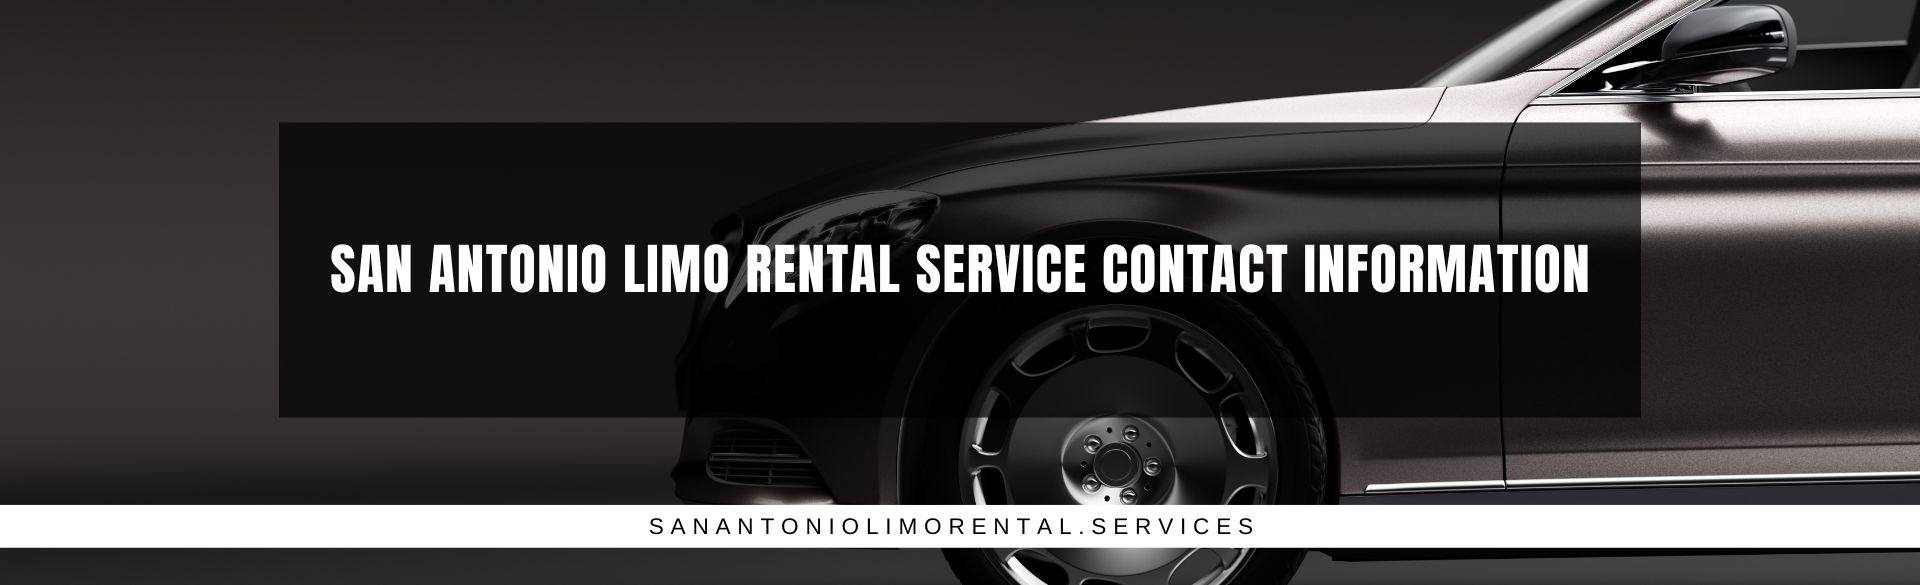 San Antonio Limo Rental Service Contact Information